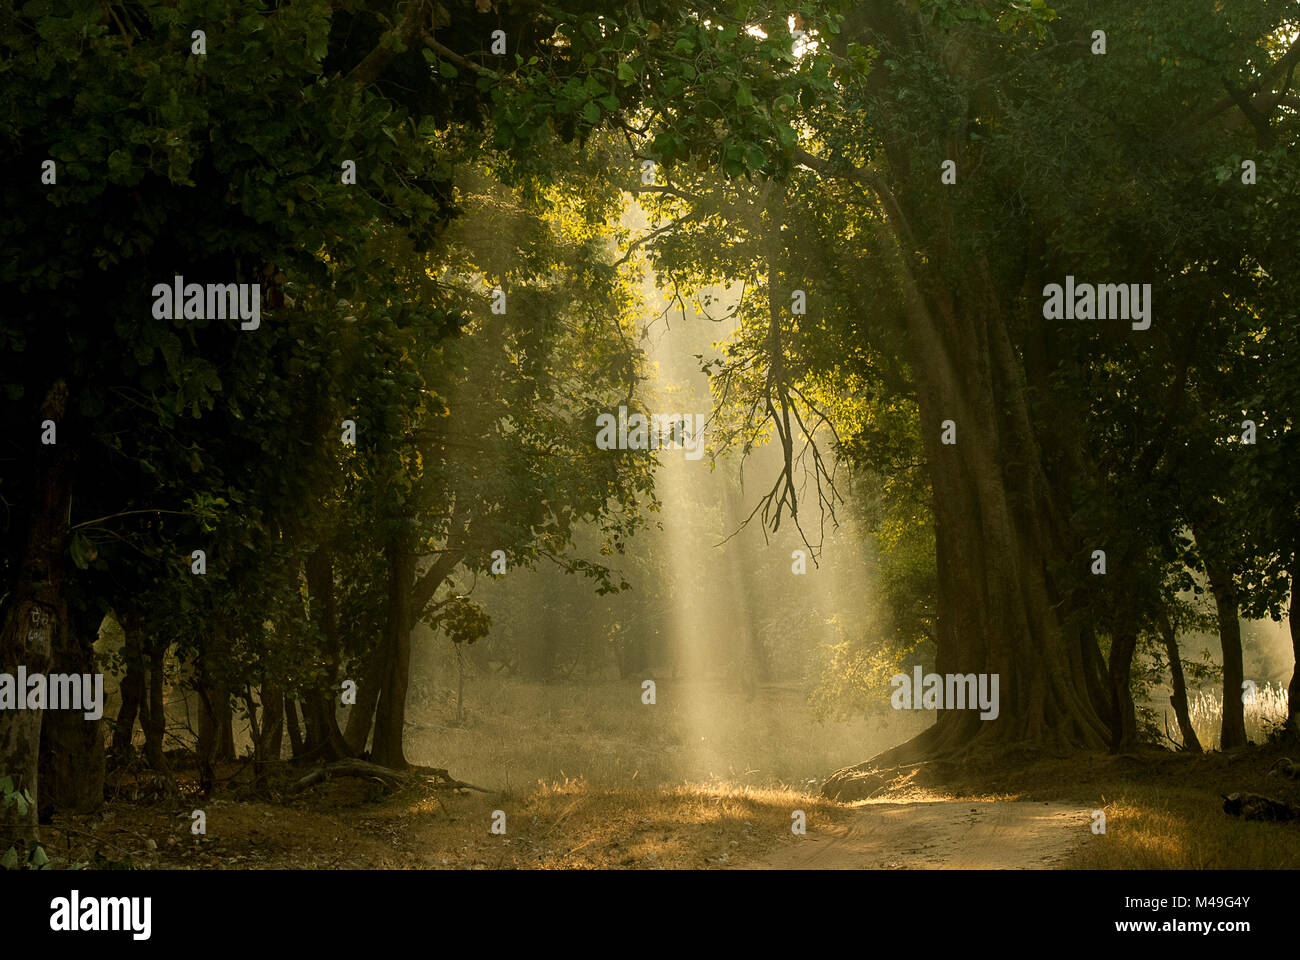 La mattina presto gli alberi di luce attraverso il bosco di latifoglie. Bandhavgarh National Park, India. Foto Stock